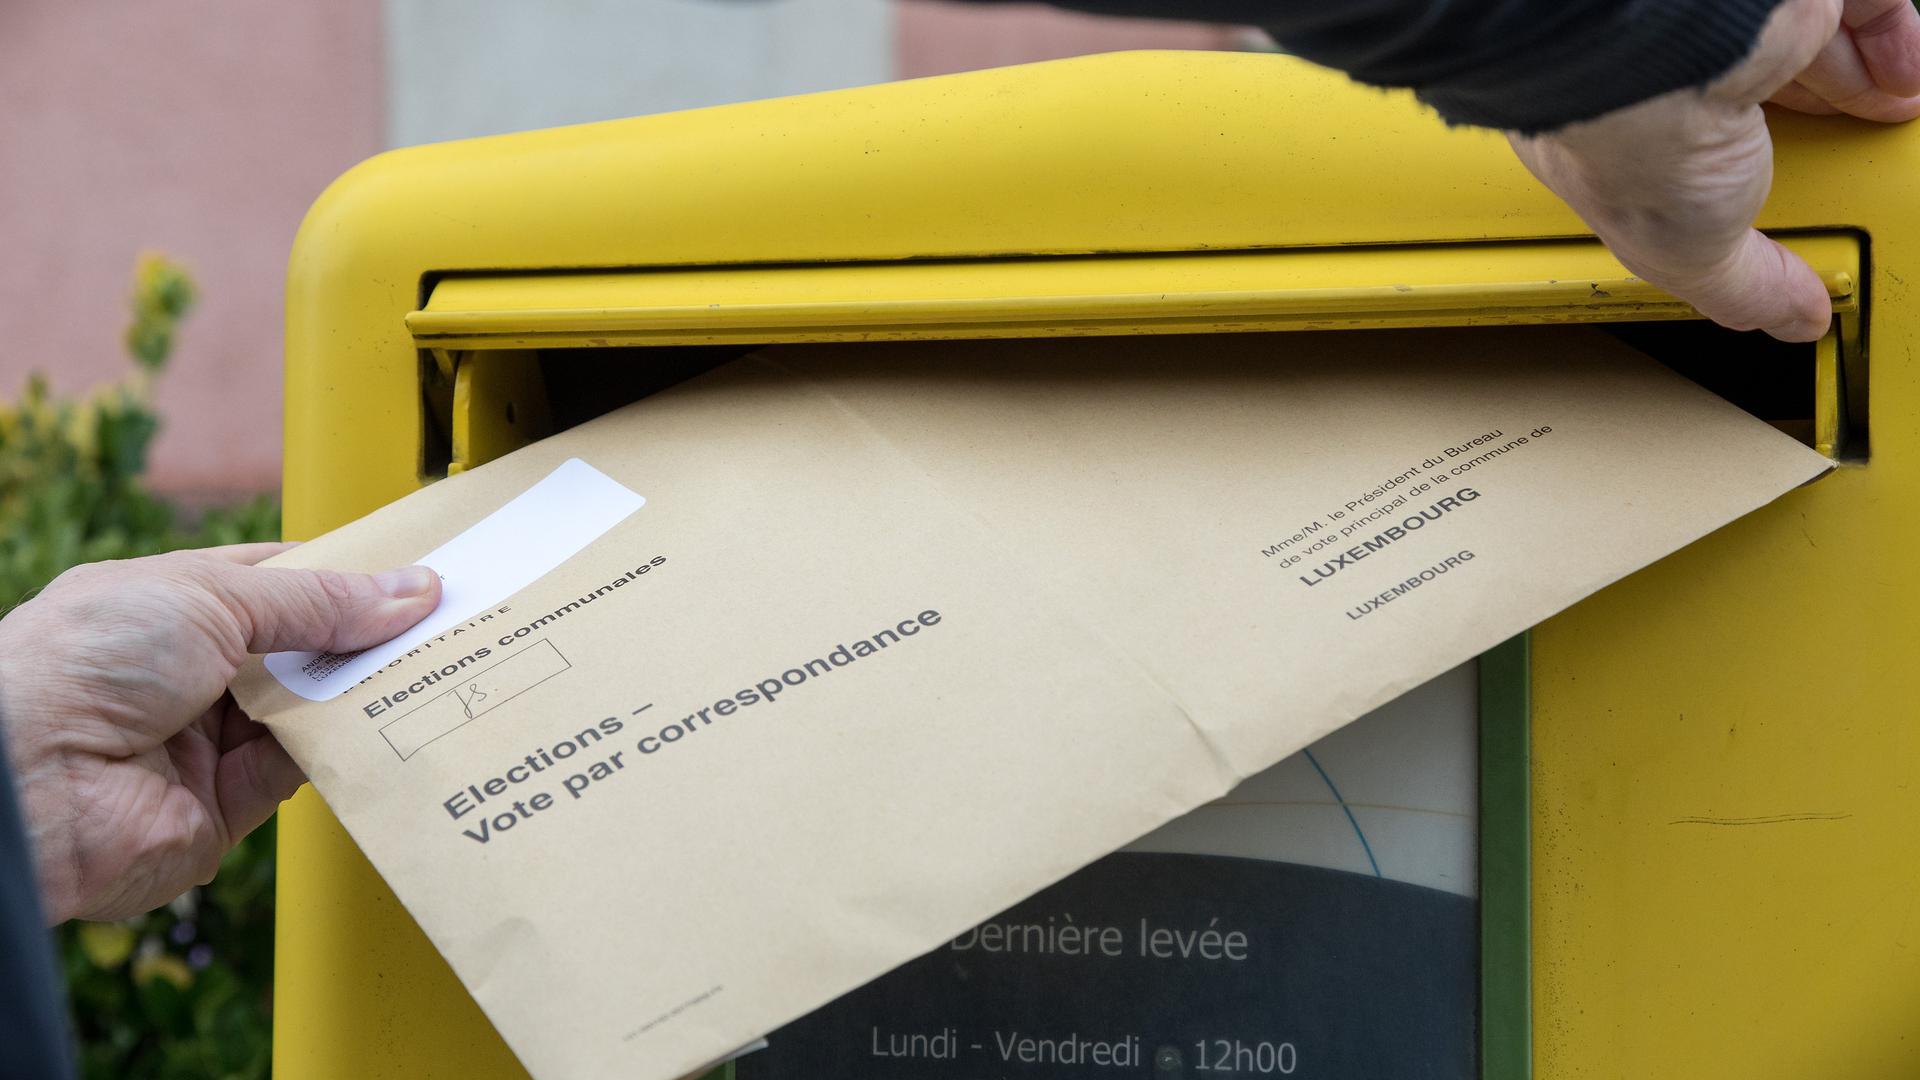  En tout dernier recours, les électeurs peuvent également remettre leur enveloppe jaune renfermant l'enveloppe électorale contenant le bulletin de vote, au bureau de vote de la commune, le jour des élections.